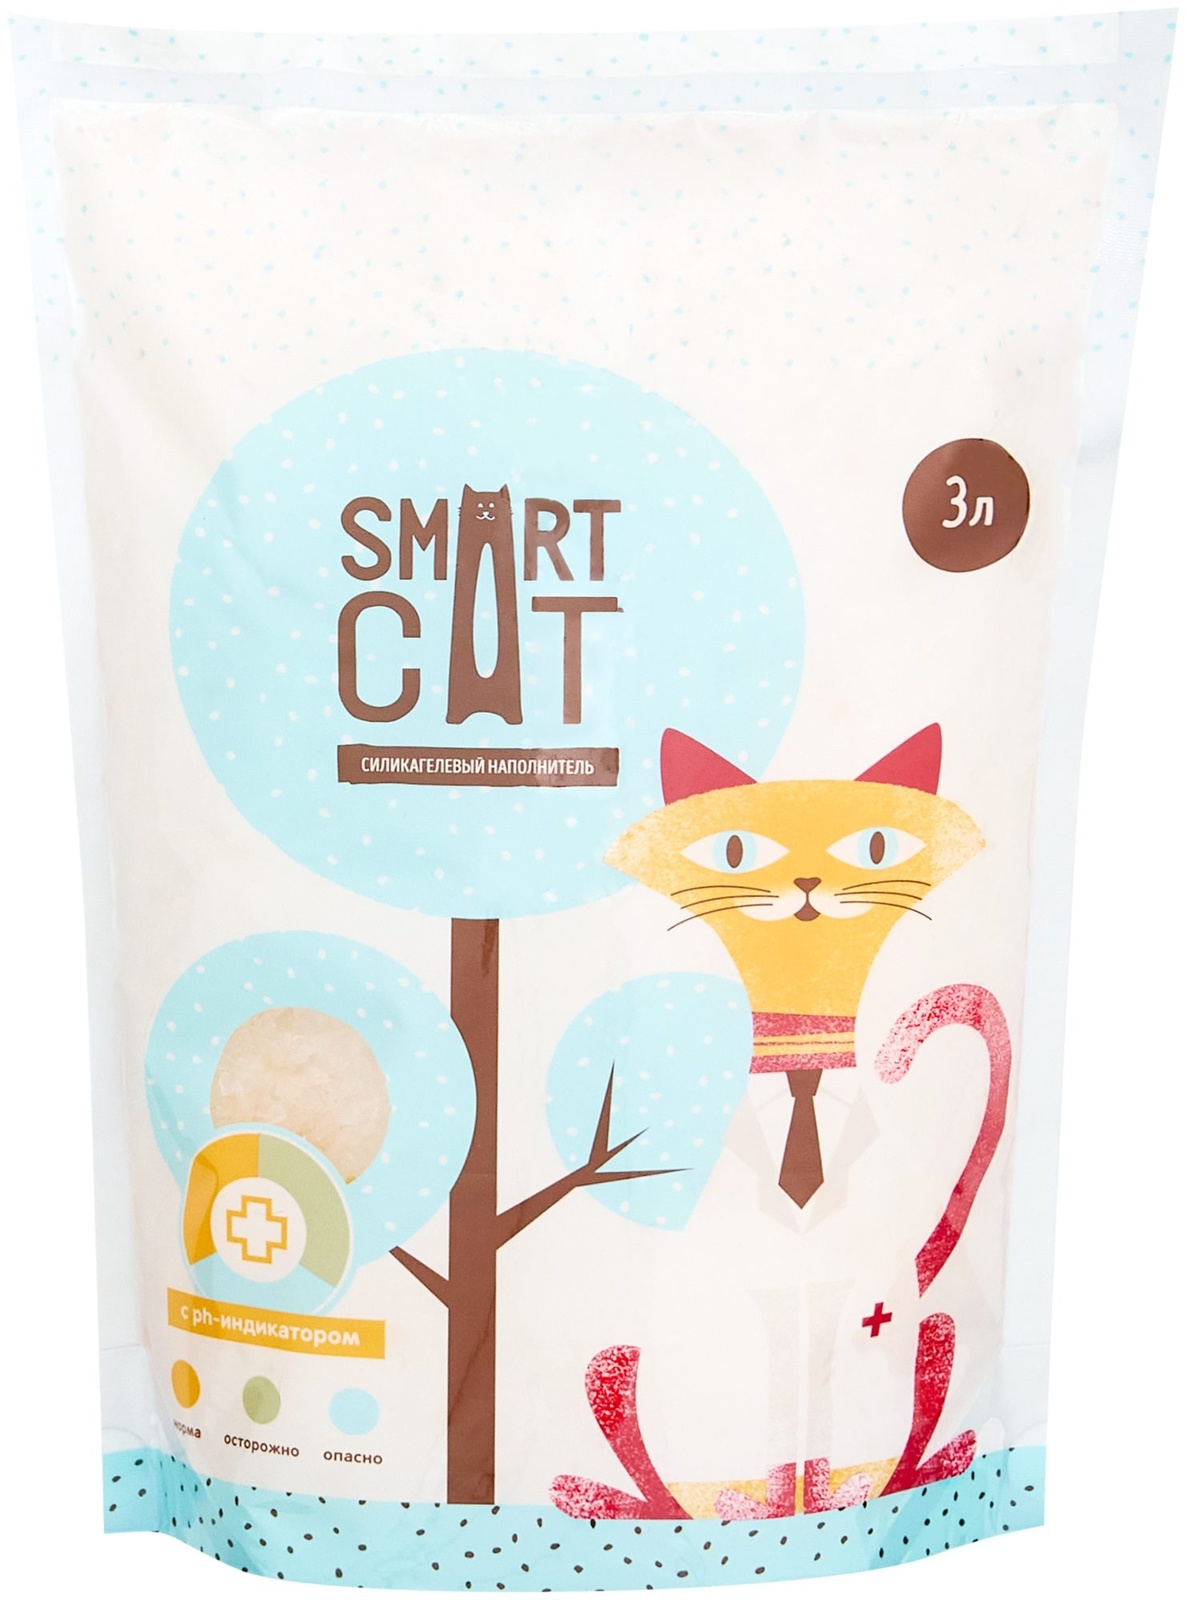 Smart Cat наполнитель силикагелевый наполнитель с pH индикатором (1,25 кг) Smart Cat наполнитель силикагелевый наполнитель с pH индикатором (1,25 кг) - фото 1